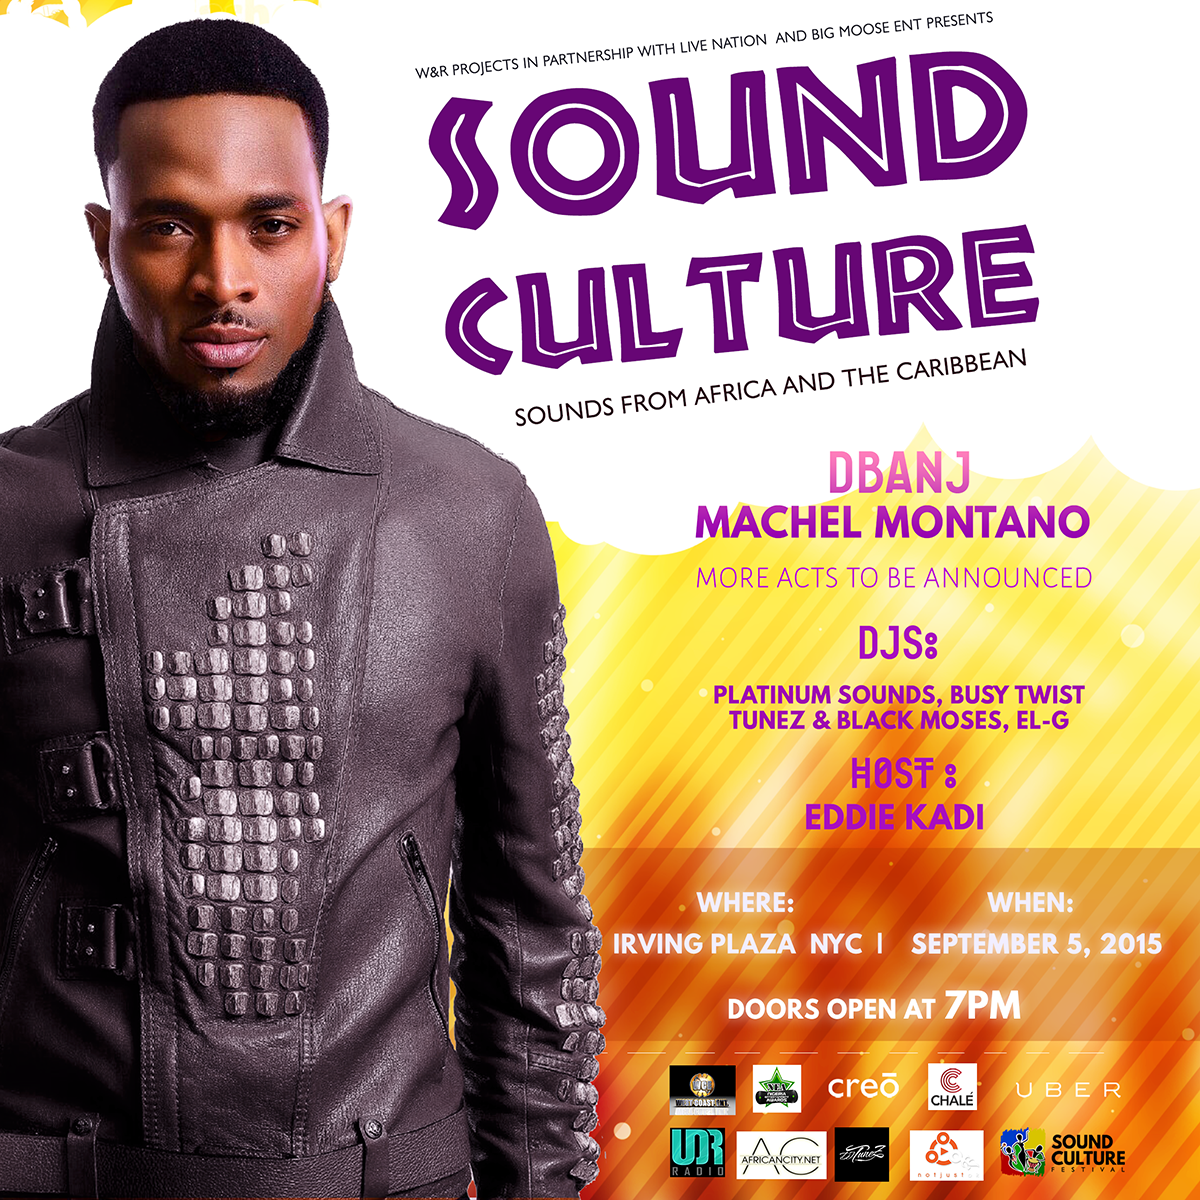 Live Nation Announces 1st Sound Culture Fest w/ D'banj & Machel Montano